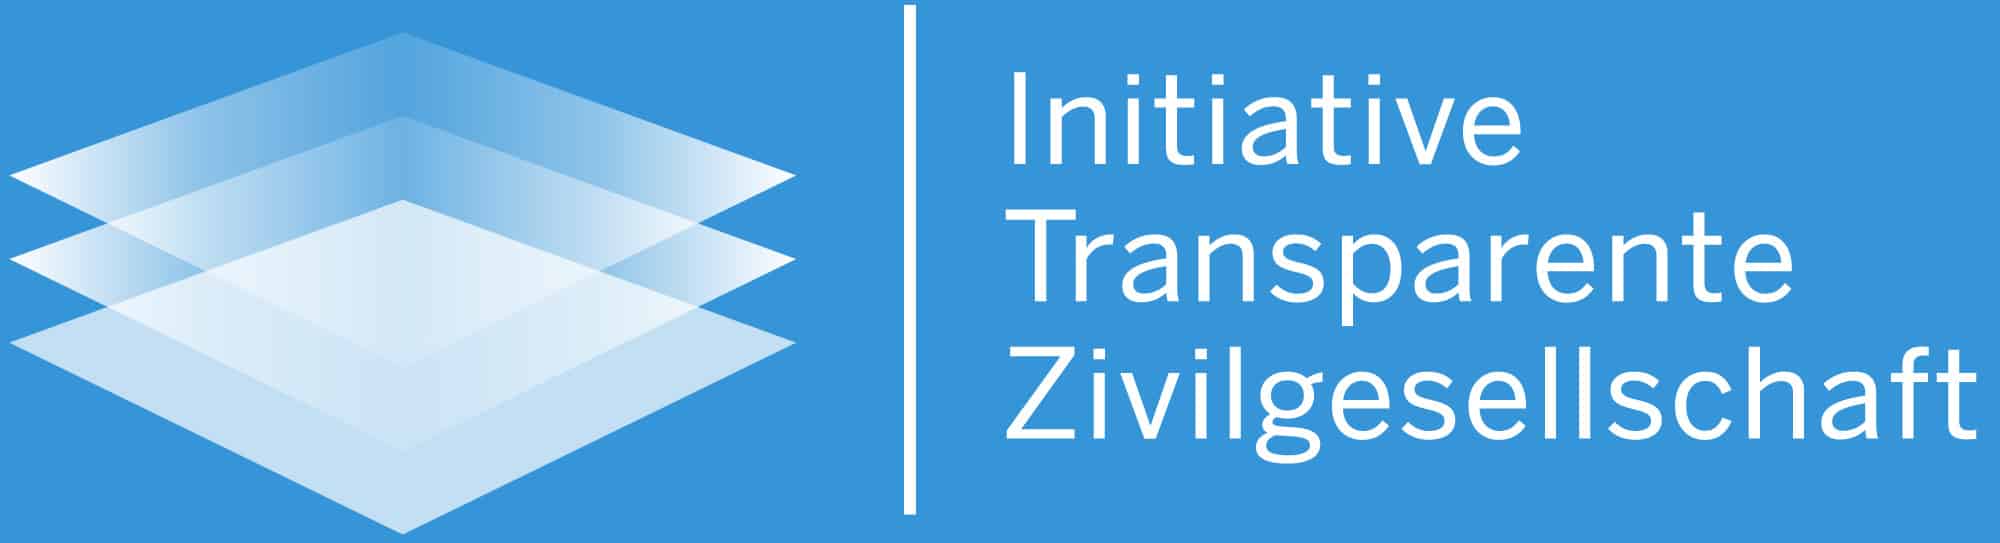 Transparente_Zivilgesellschaft_logo-itz